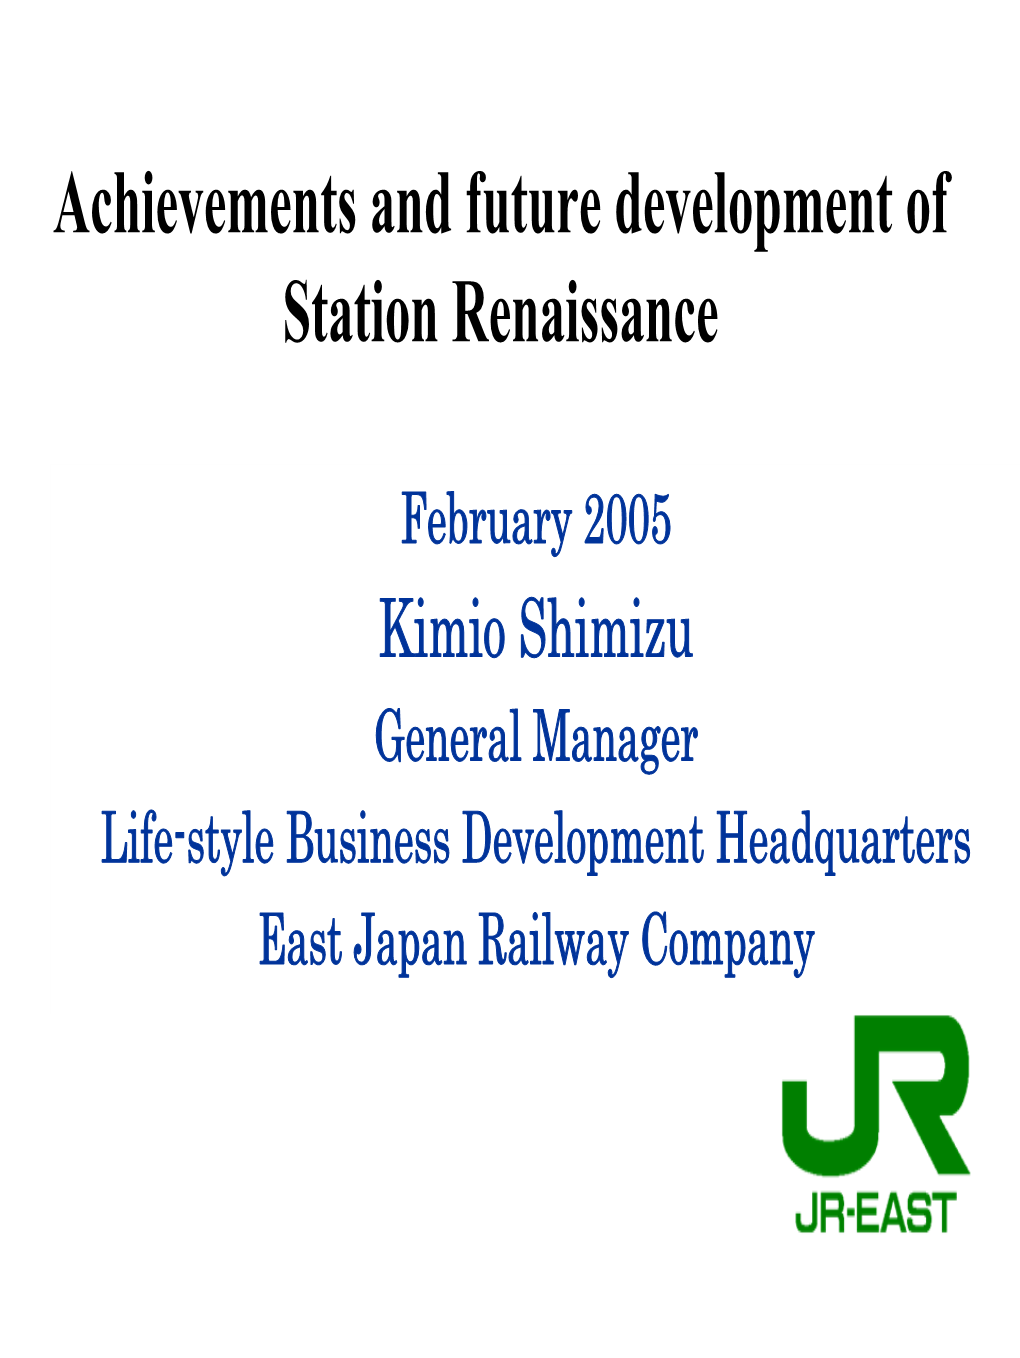 Achievements and Future Development of Station Renaissance